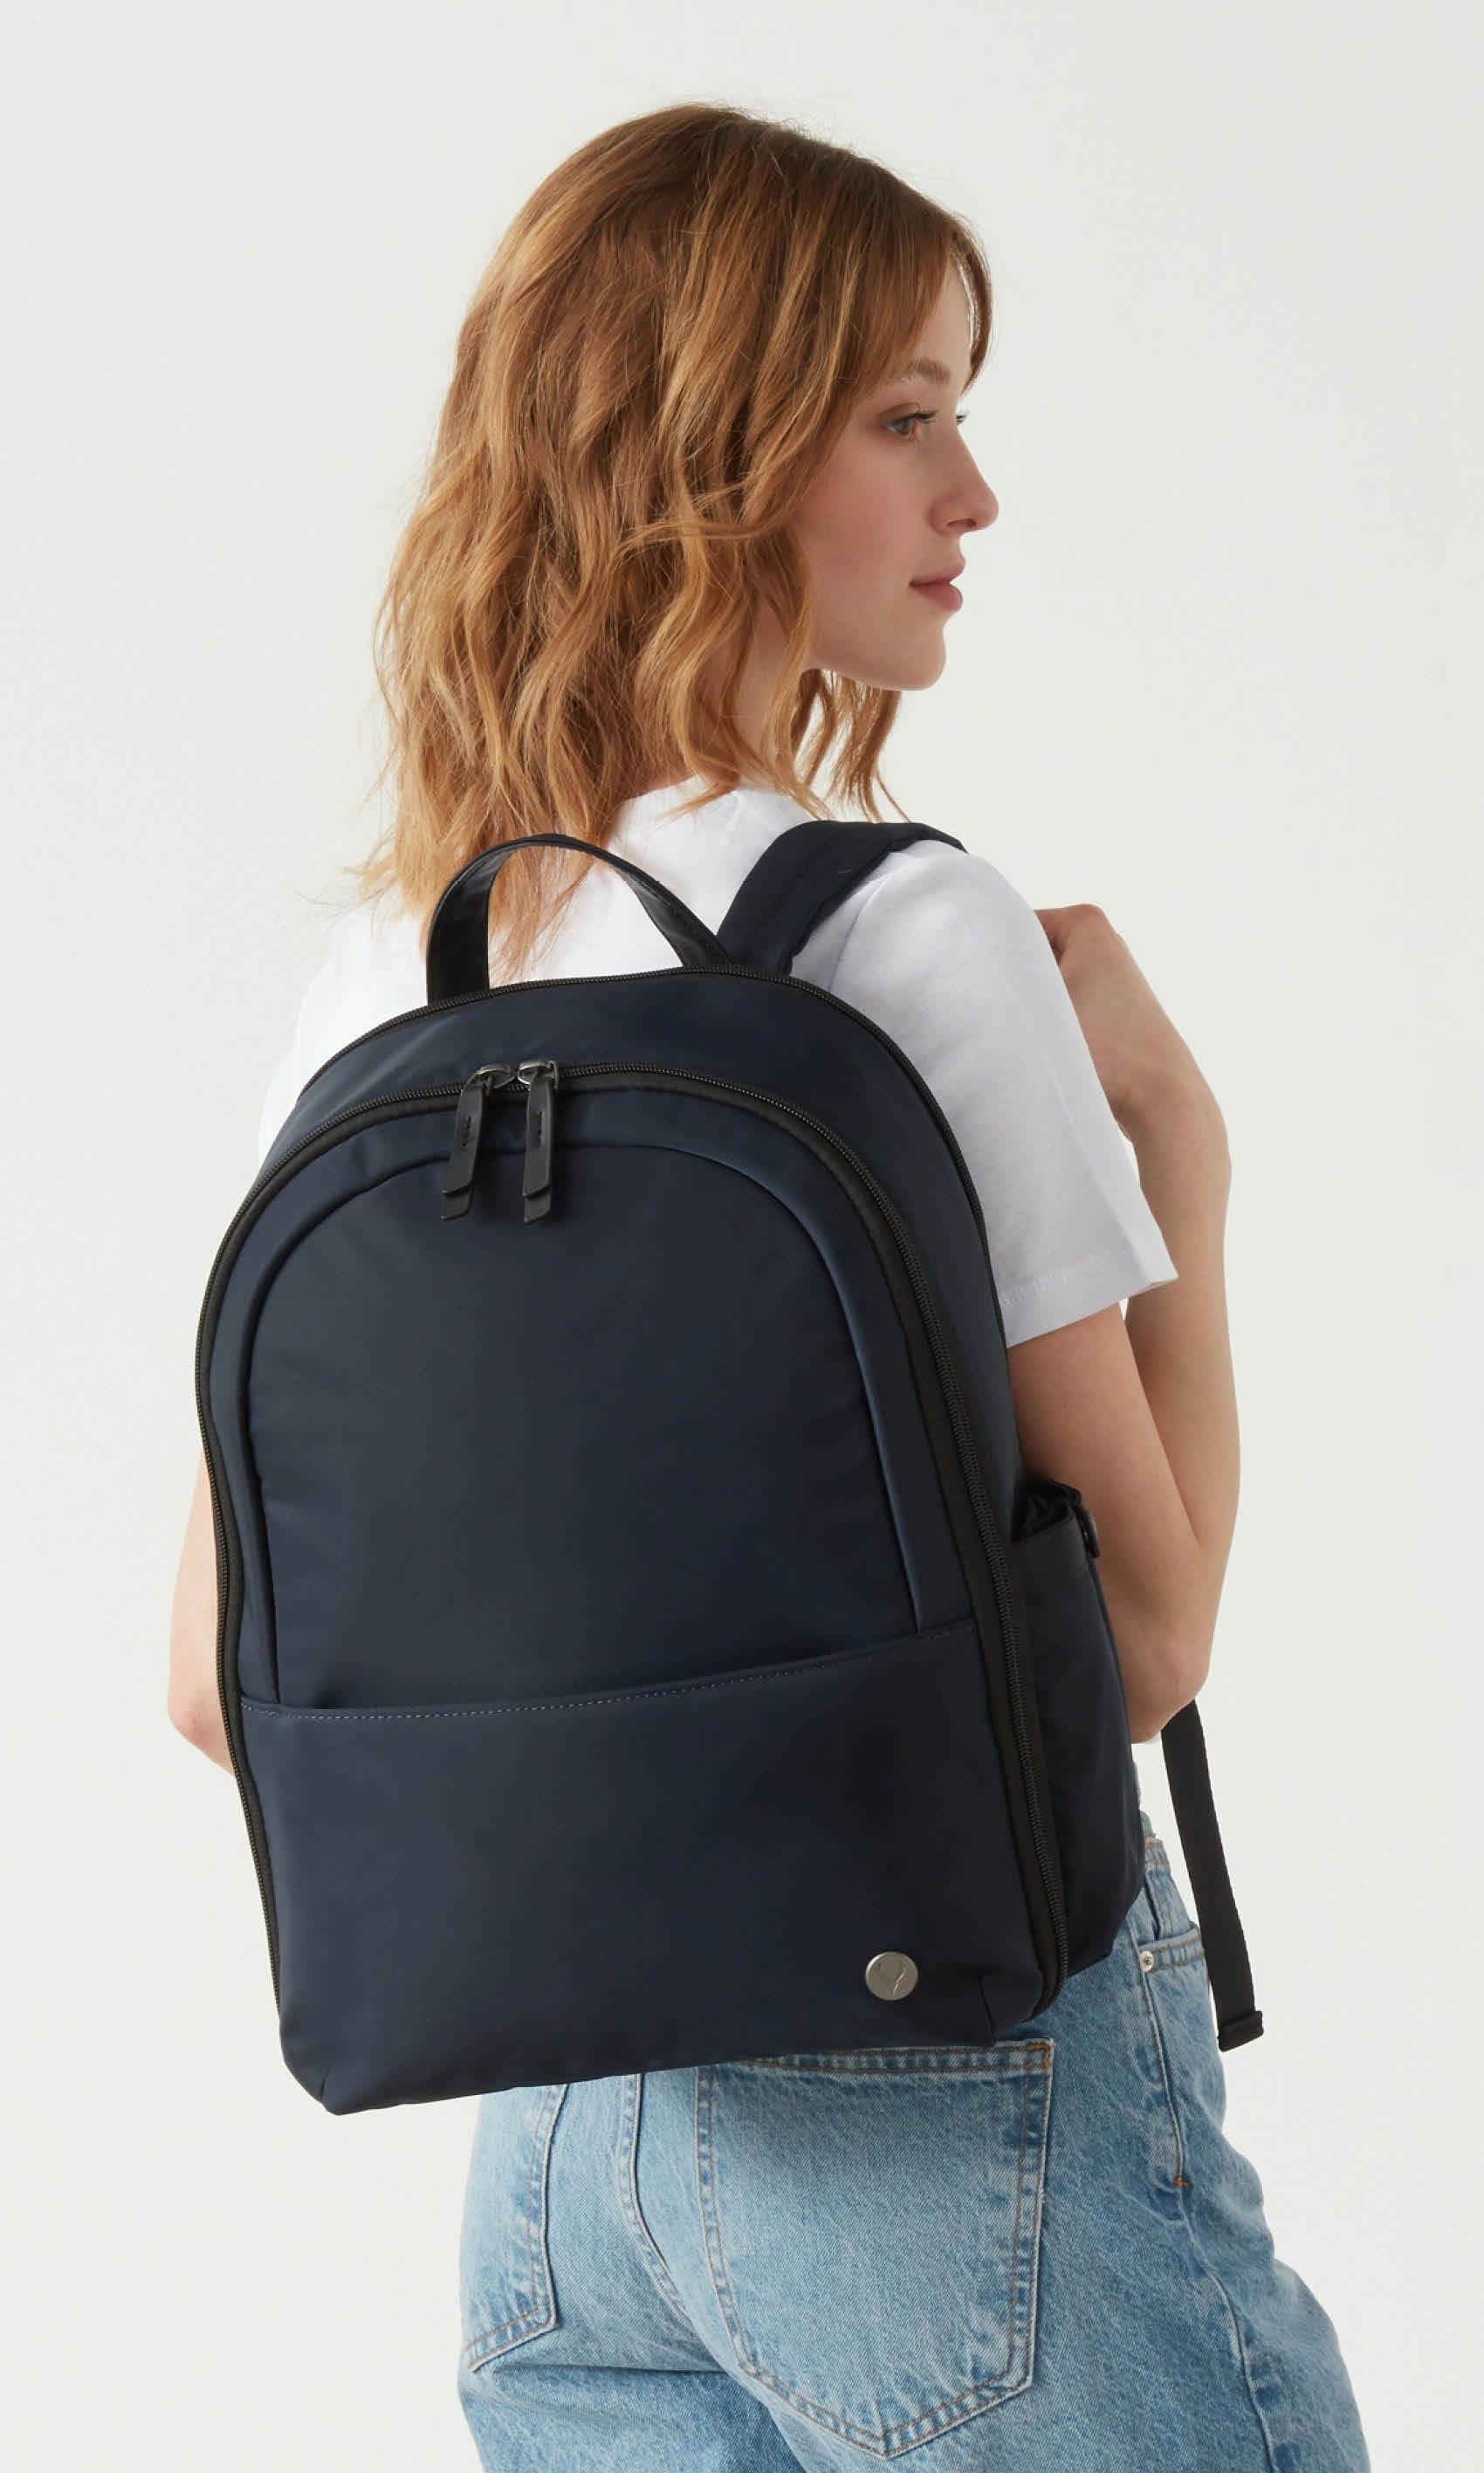 Antler Luggage -  Chelsea backpack in mineral - Backpacks Chelsea Backpack Mineral (Blue) | Travel & Lifestyle Bags | Antler UK